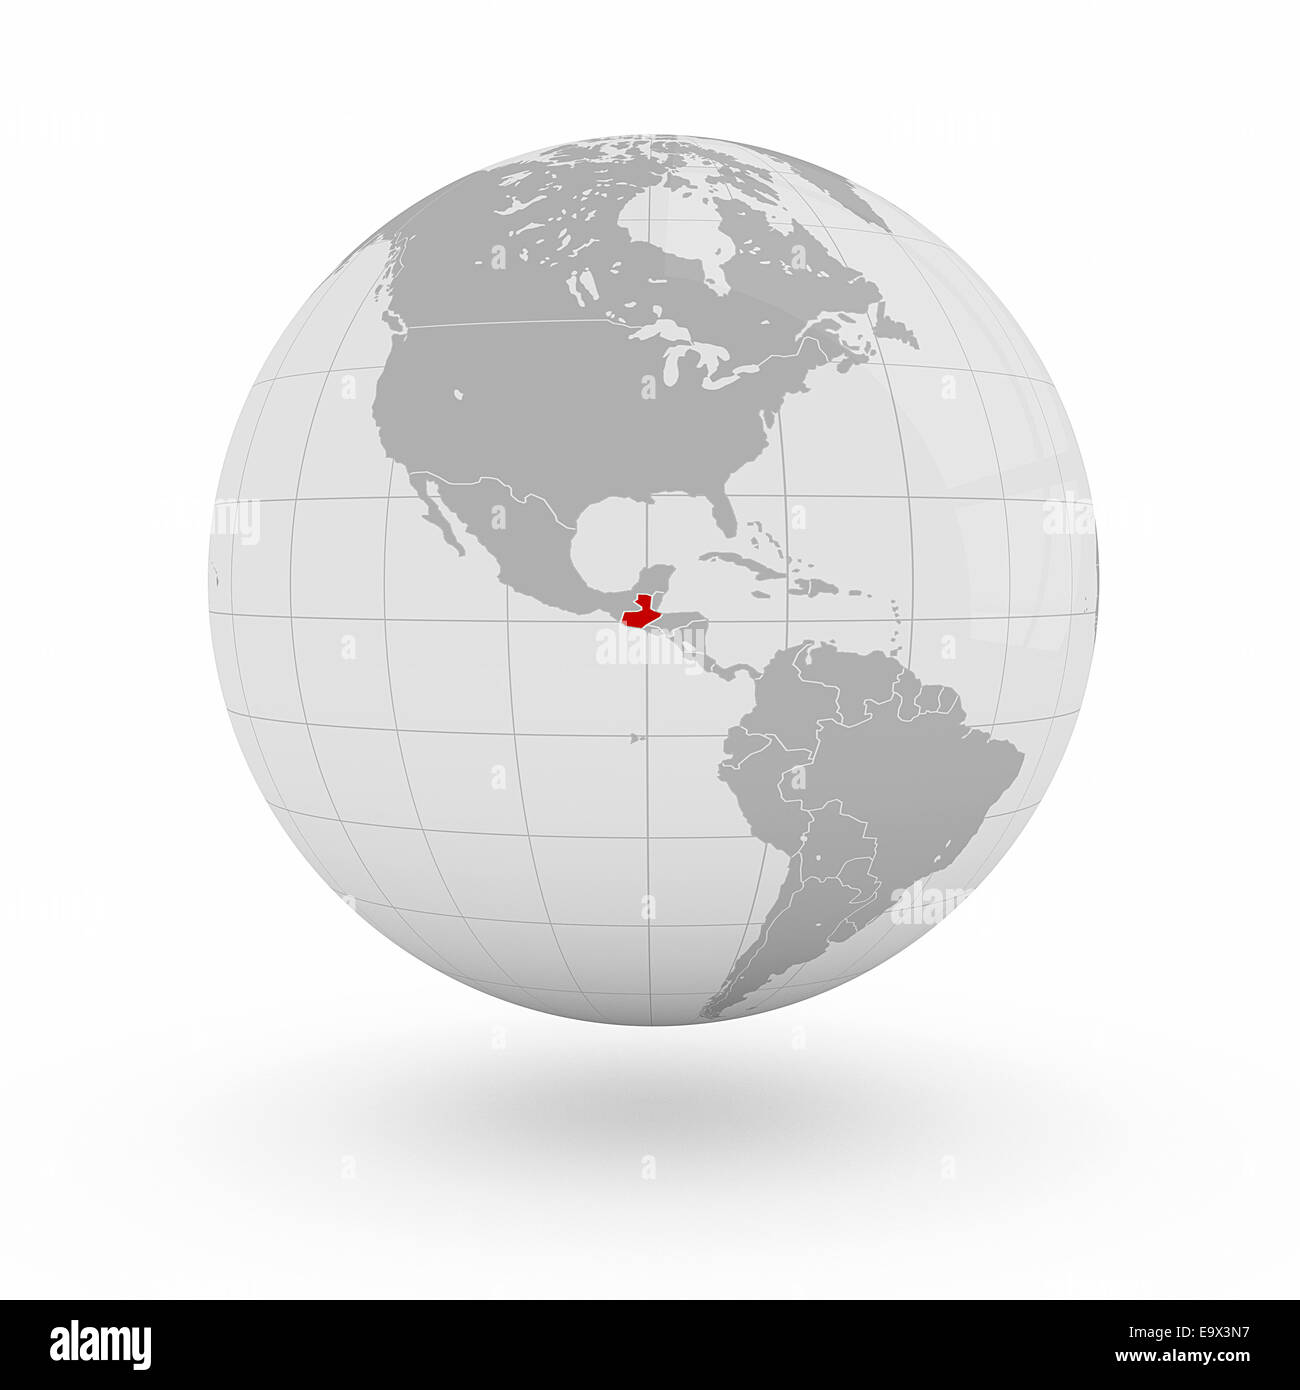 Guatemala on globe isolated on white background Stock Photo